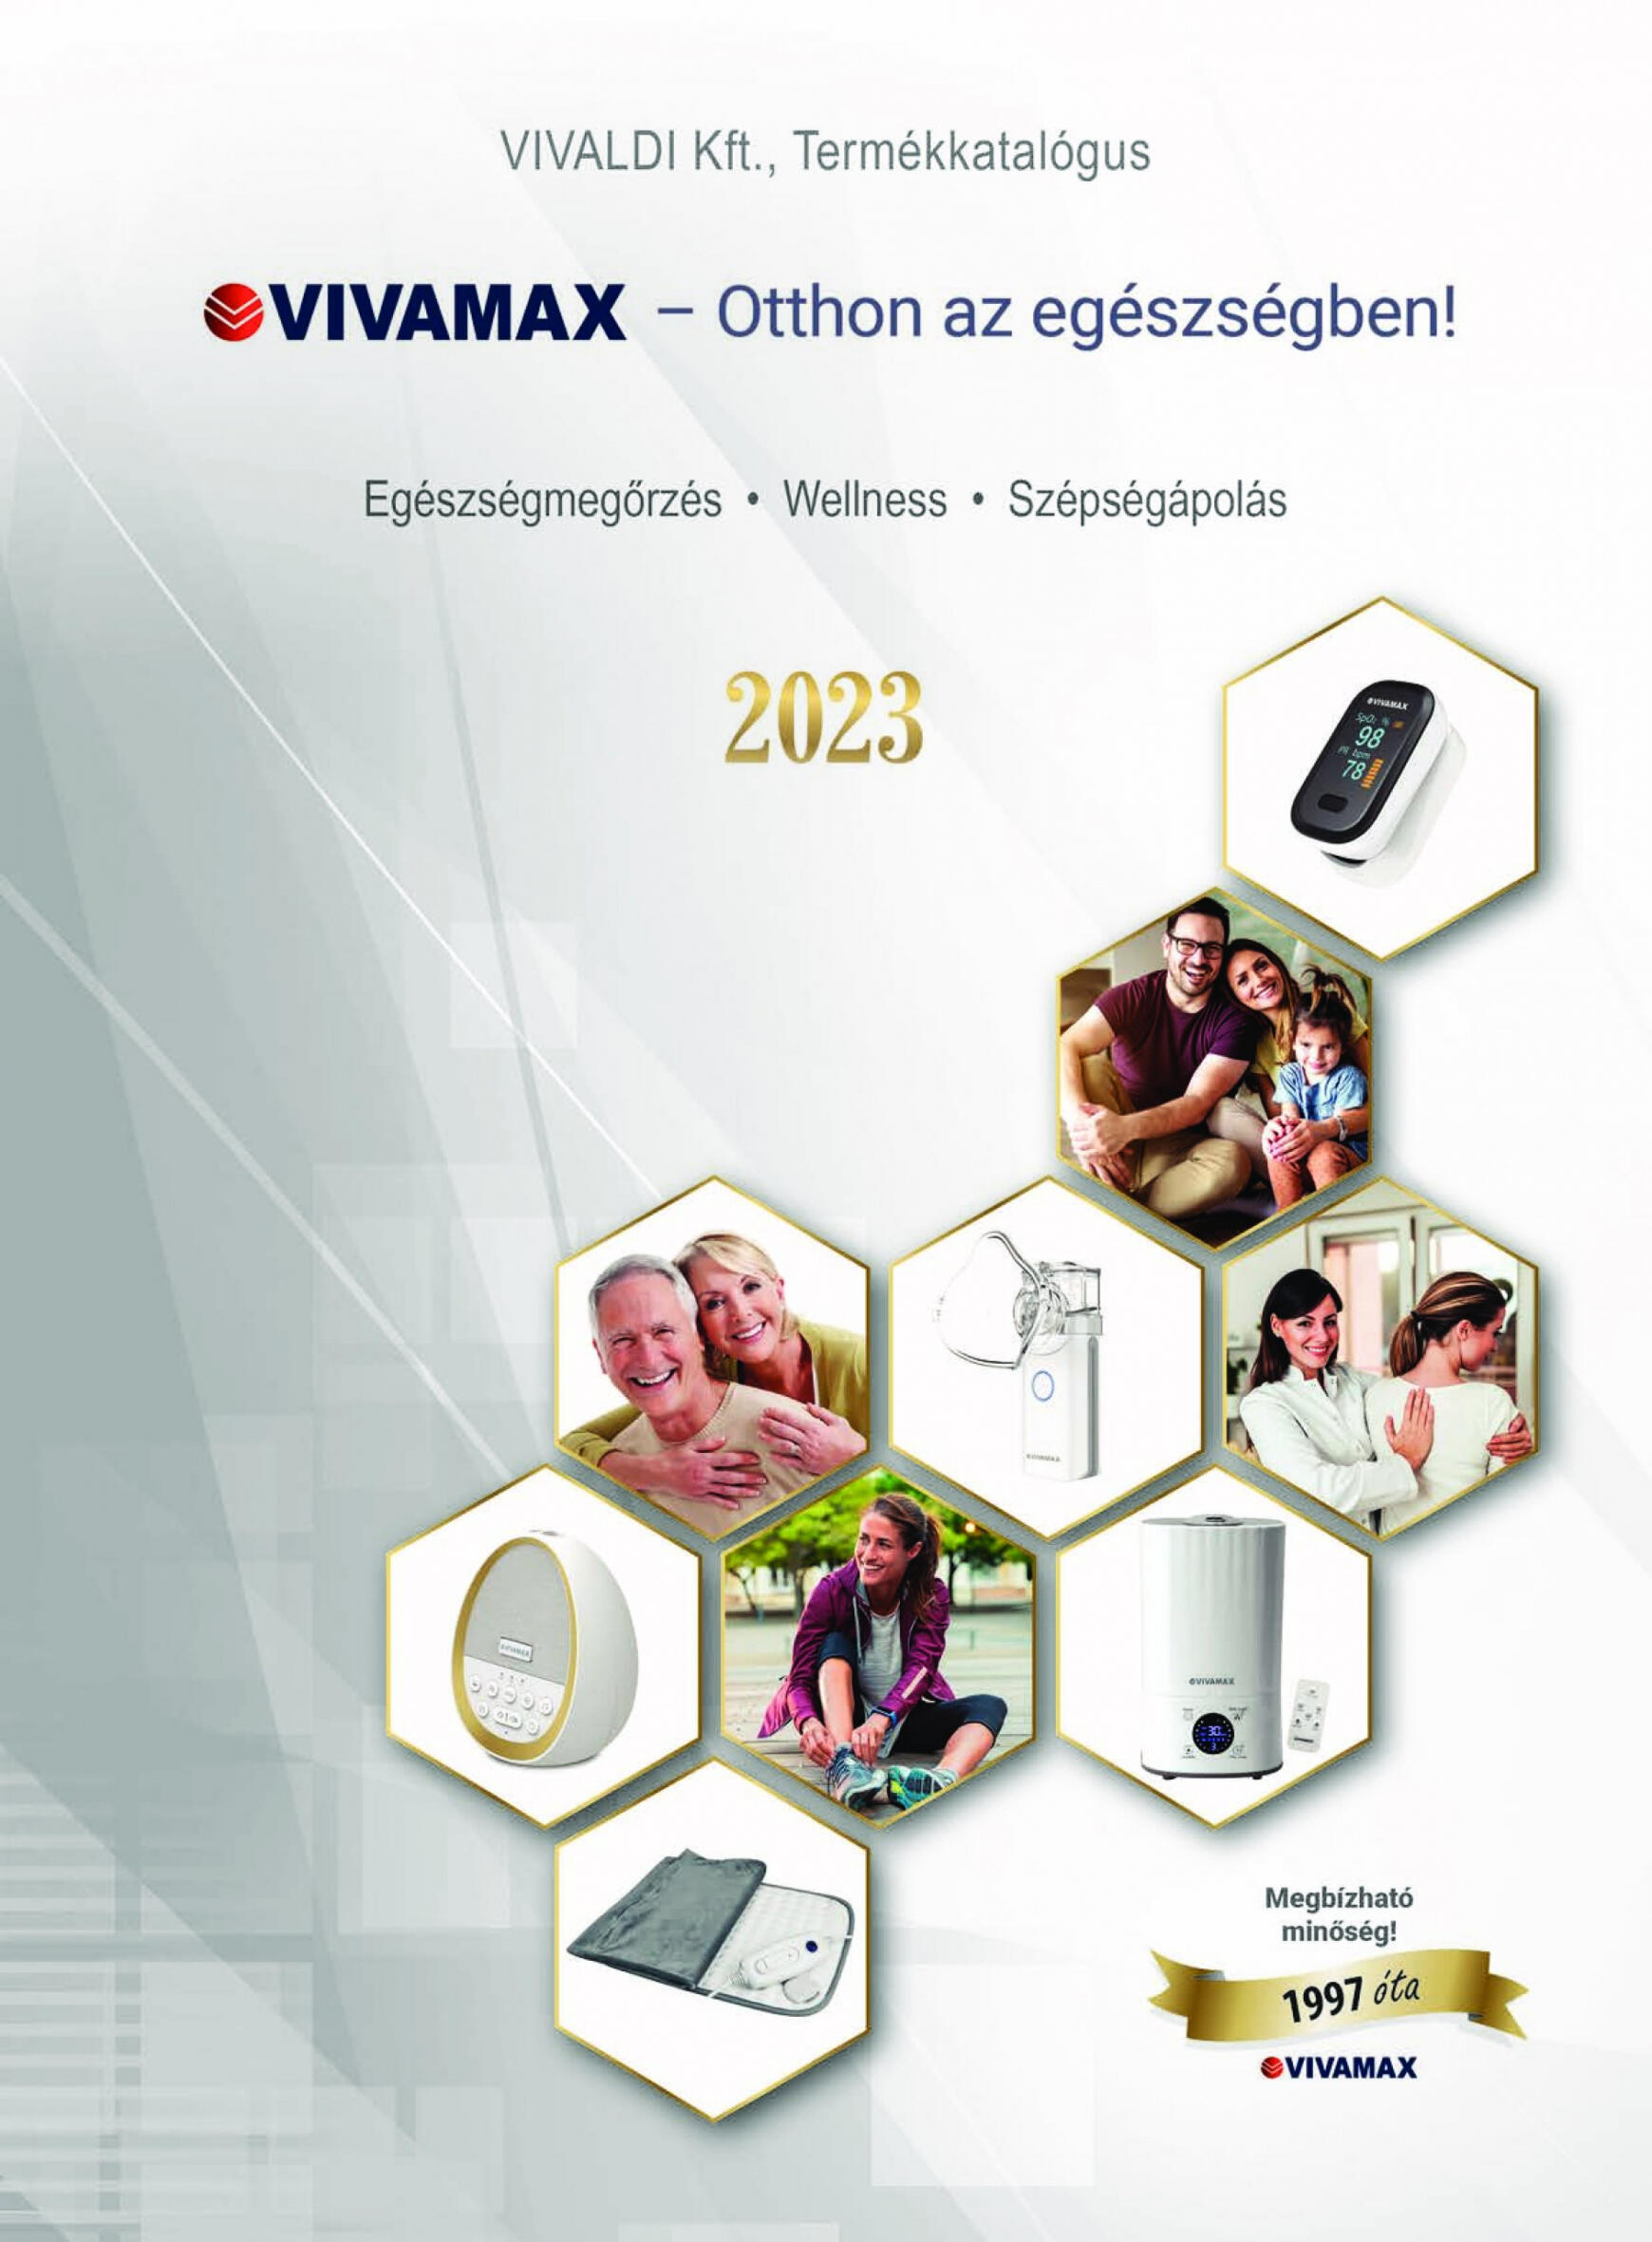 vivamax - Vivamax Katalogus 2023 - page: 1